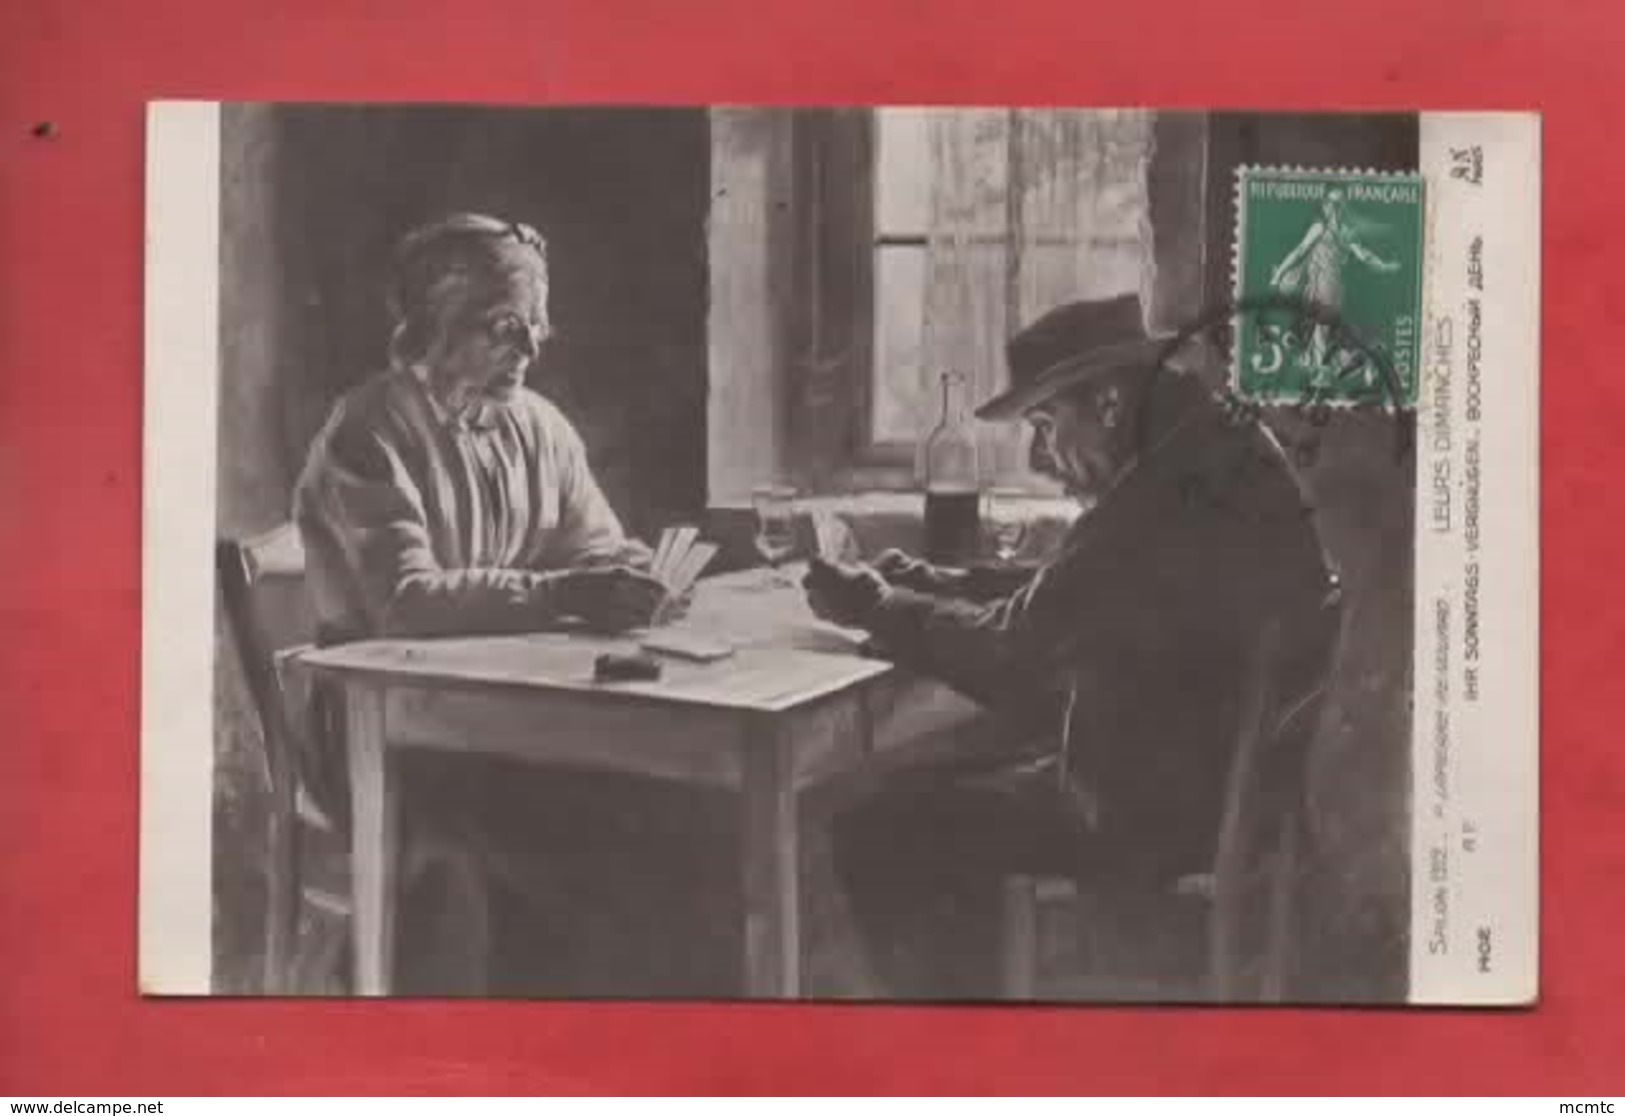 CPA -  Salons 1912 - P.Lapierre Renouard  -  Leurs Dimanches  -( Cartes à Jouer , Jeu De Cartes ) - Cartas